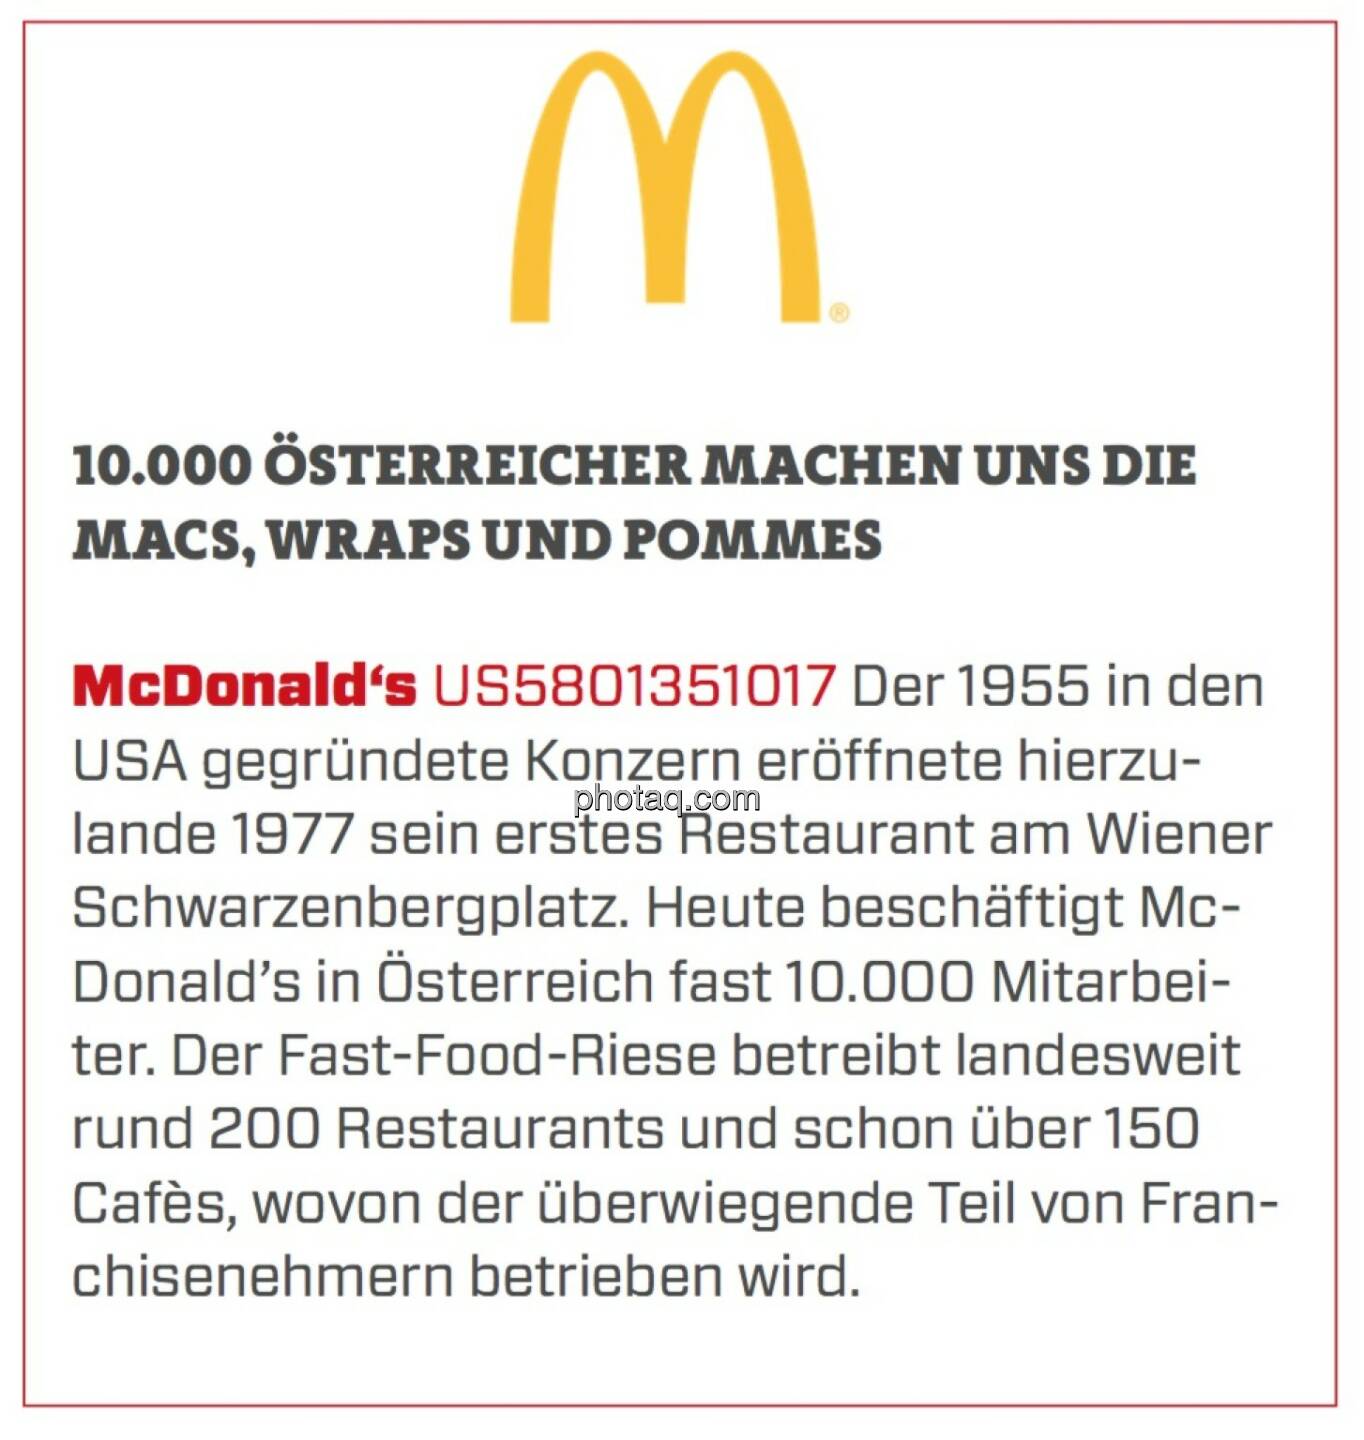 McDonald's - 10.000 Österreicher machen uns die Macs, Wraps und Pommes: Der 1955 in den USA gegründete Konzern eröffnete hierzulande 1977 sein erstes Restaurant am Wiener Schwarzenbergplatz. Heute beschäftigt McDonald’s in Österreich fast 10.000 Mitarbeiter. Der Fast-Food-Riese betreibt landesweit rund 200 Restaurants und schon über 150 Cafès, wovon der überwiegende Teil von Franchisenehmern betrieben wird. 